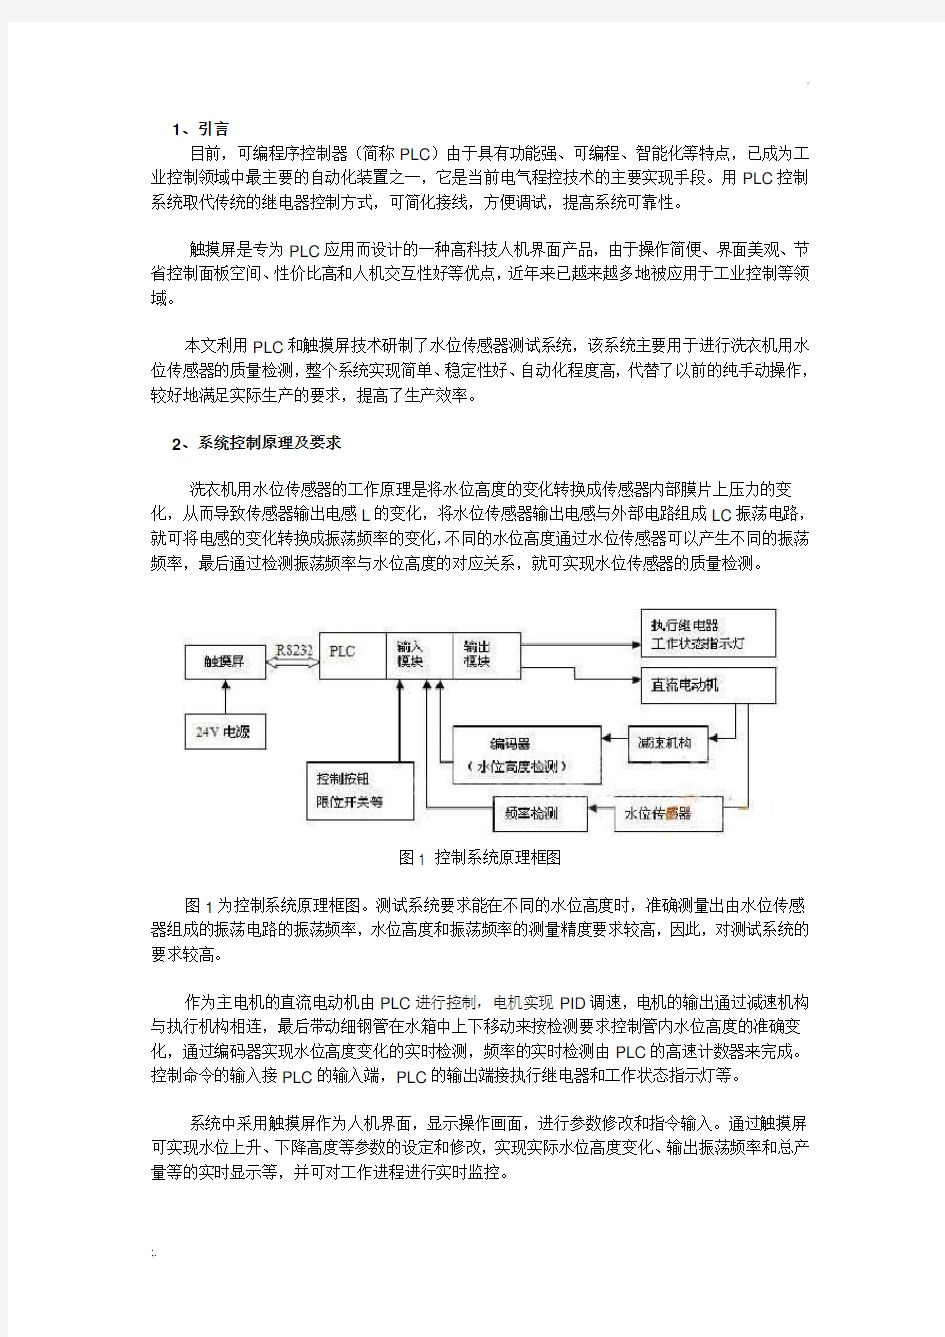 PLC程序控制流程图范例 (2)